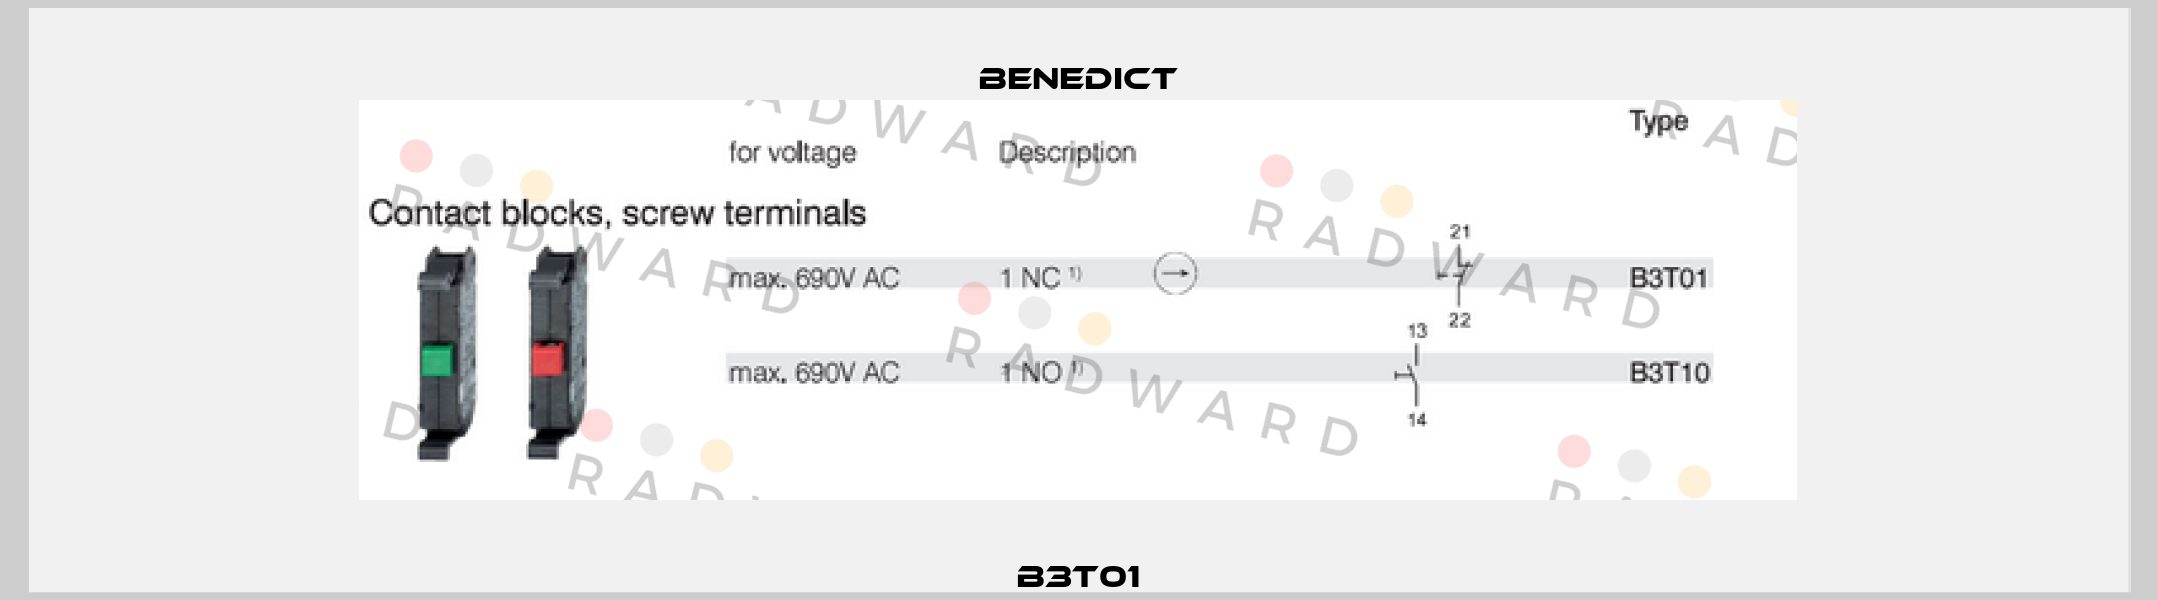 B3T01 Benedict